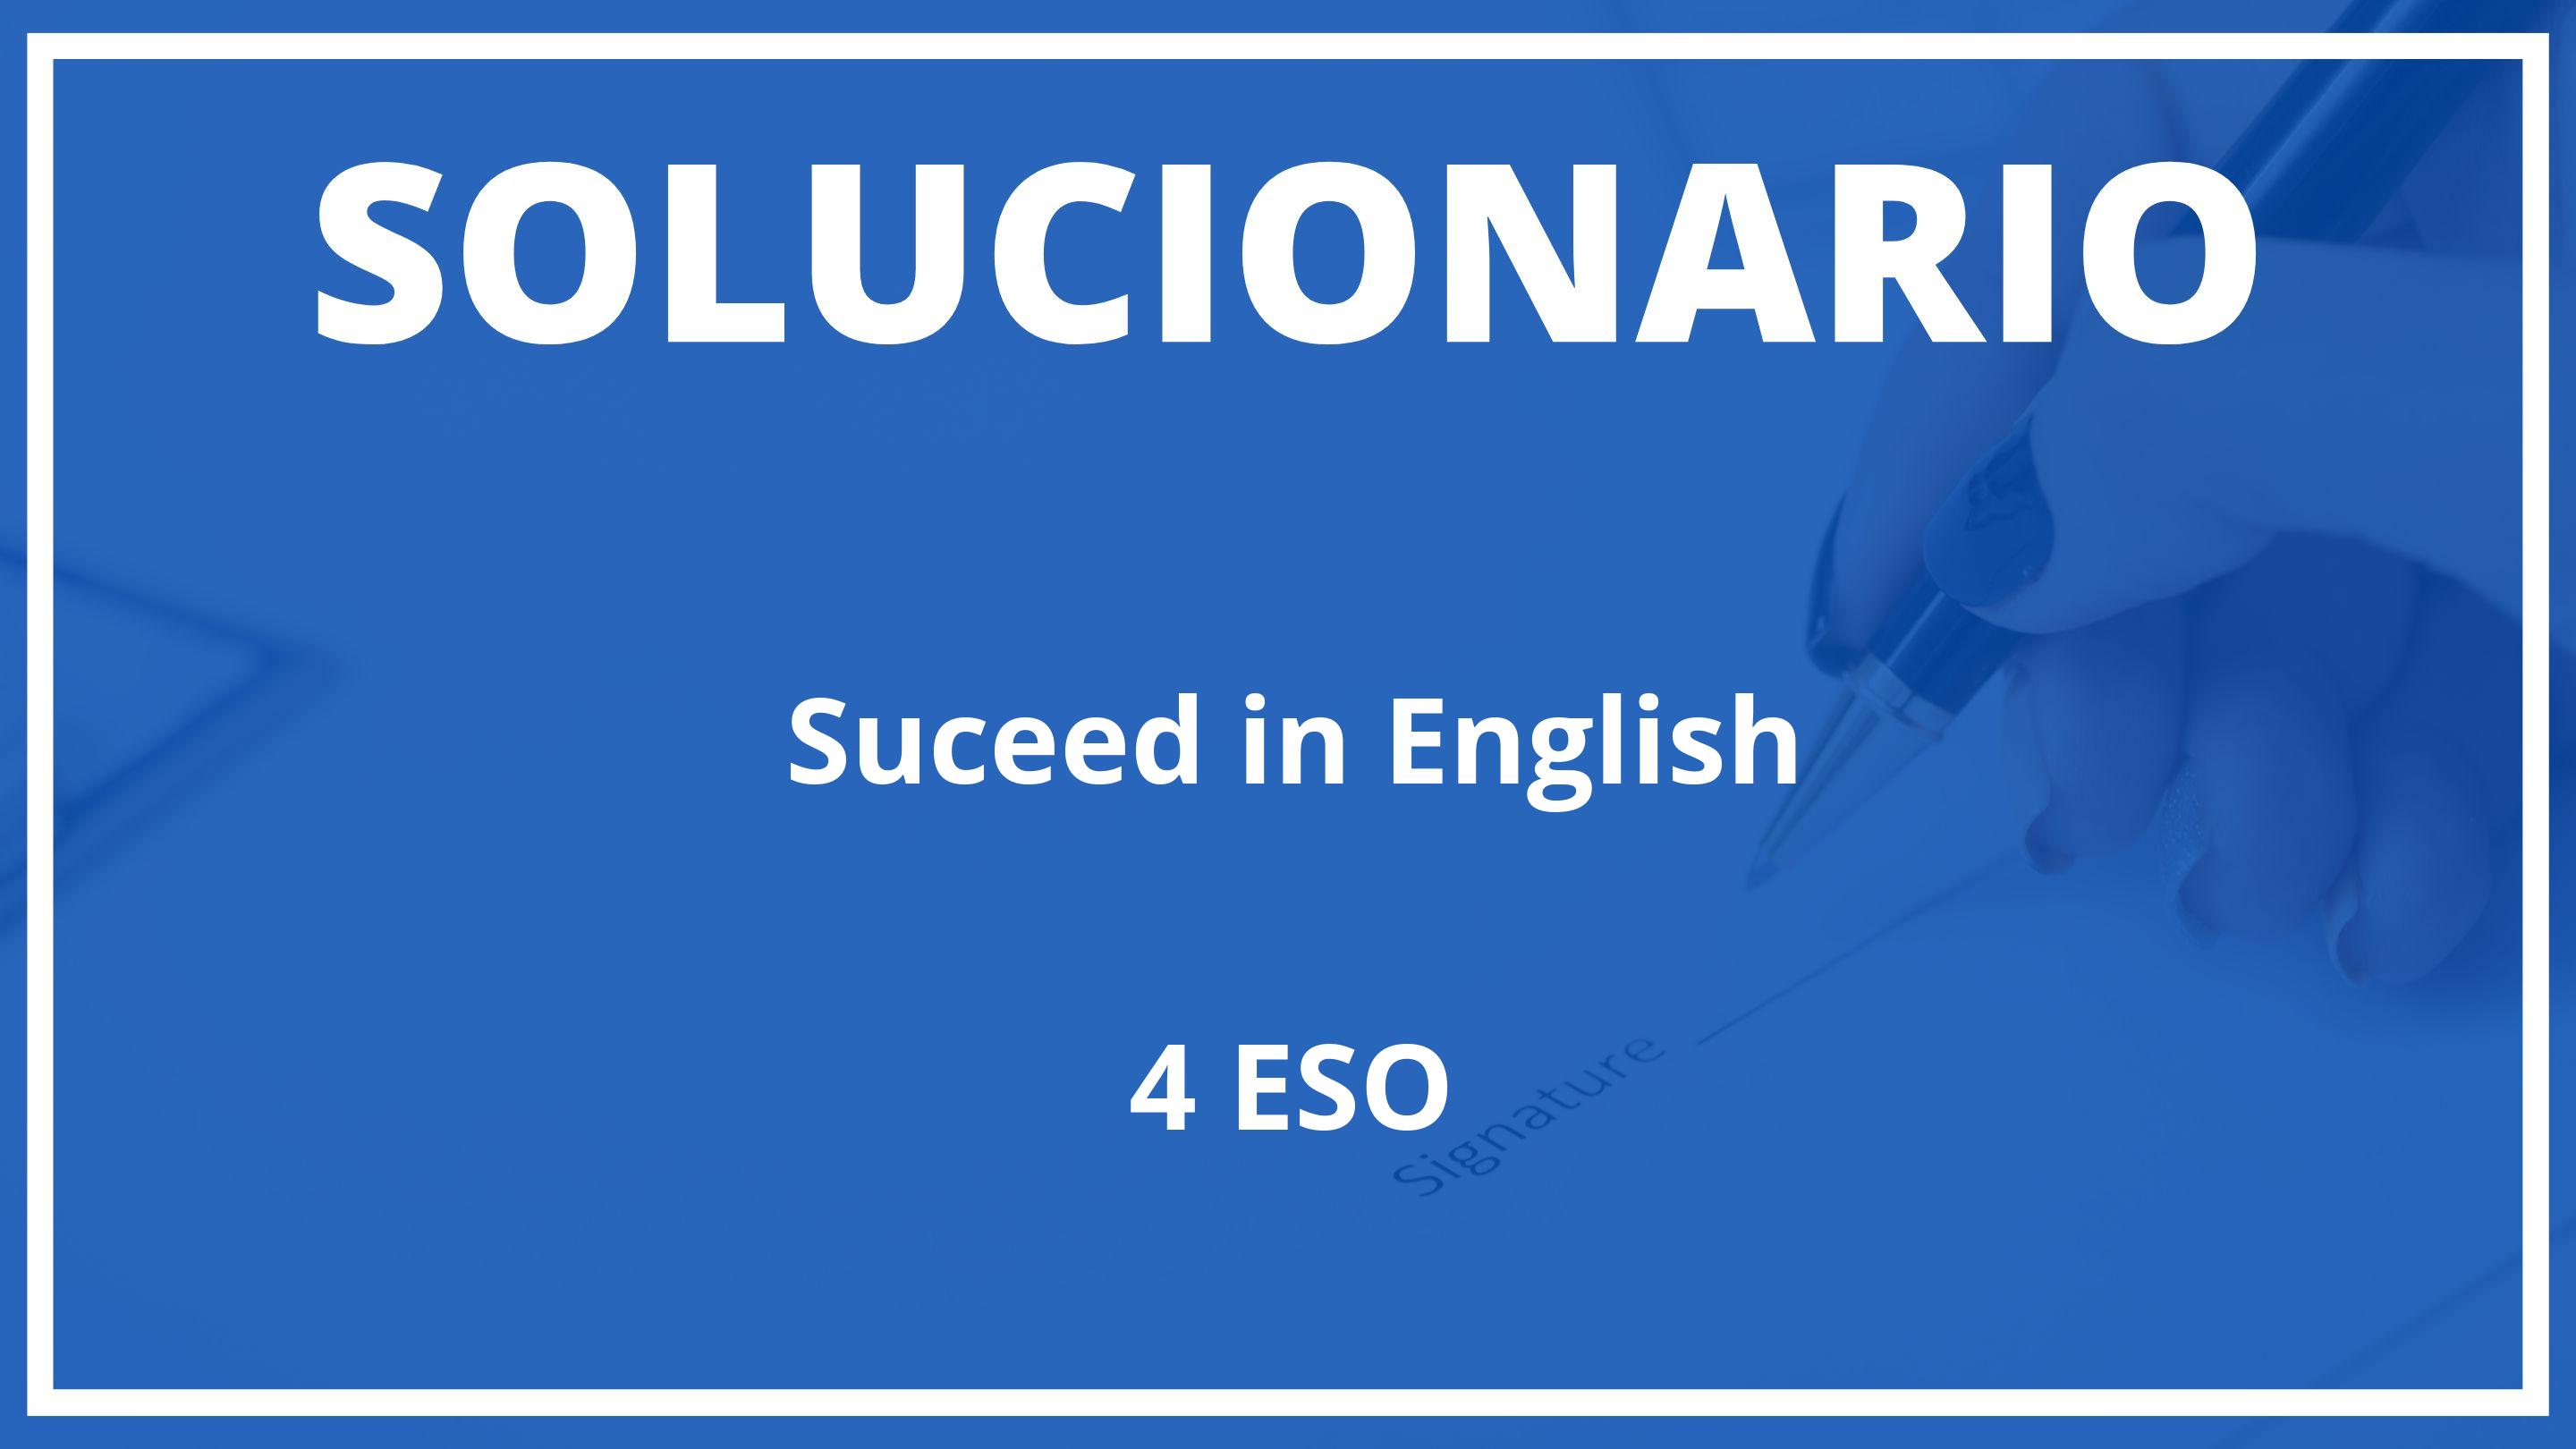 Solucionario Suceed in English  Oxford 4 ESO